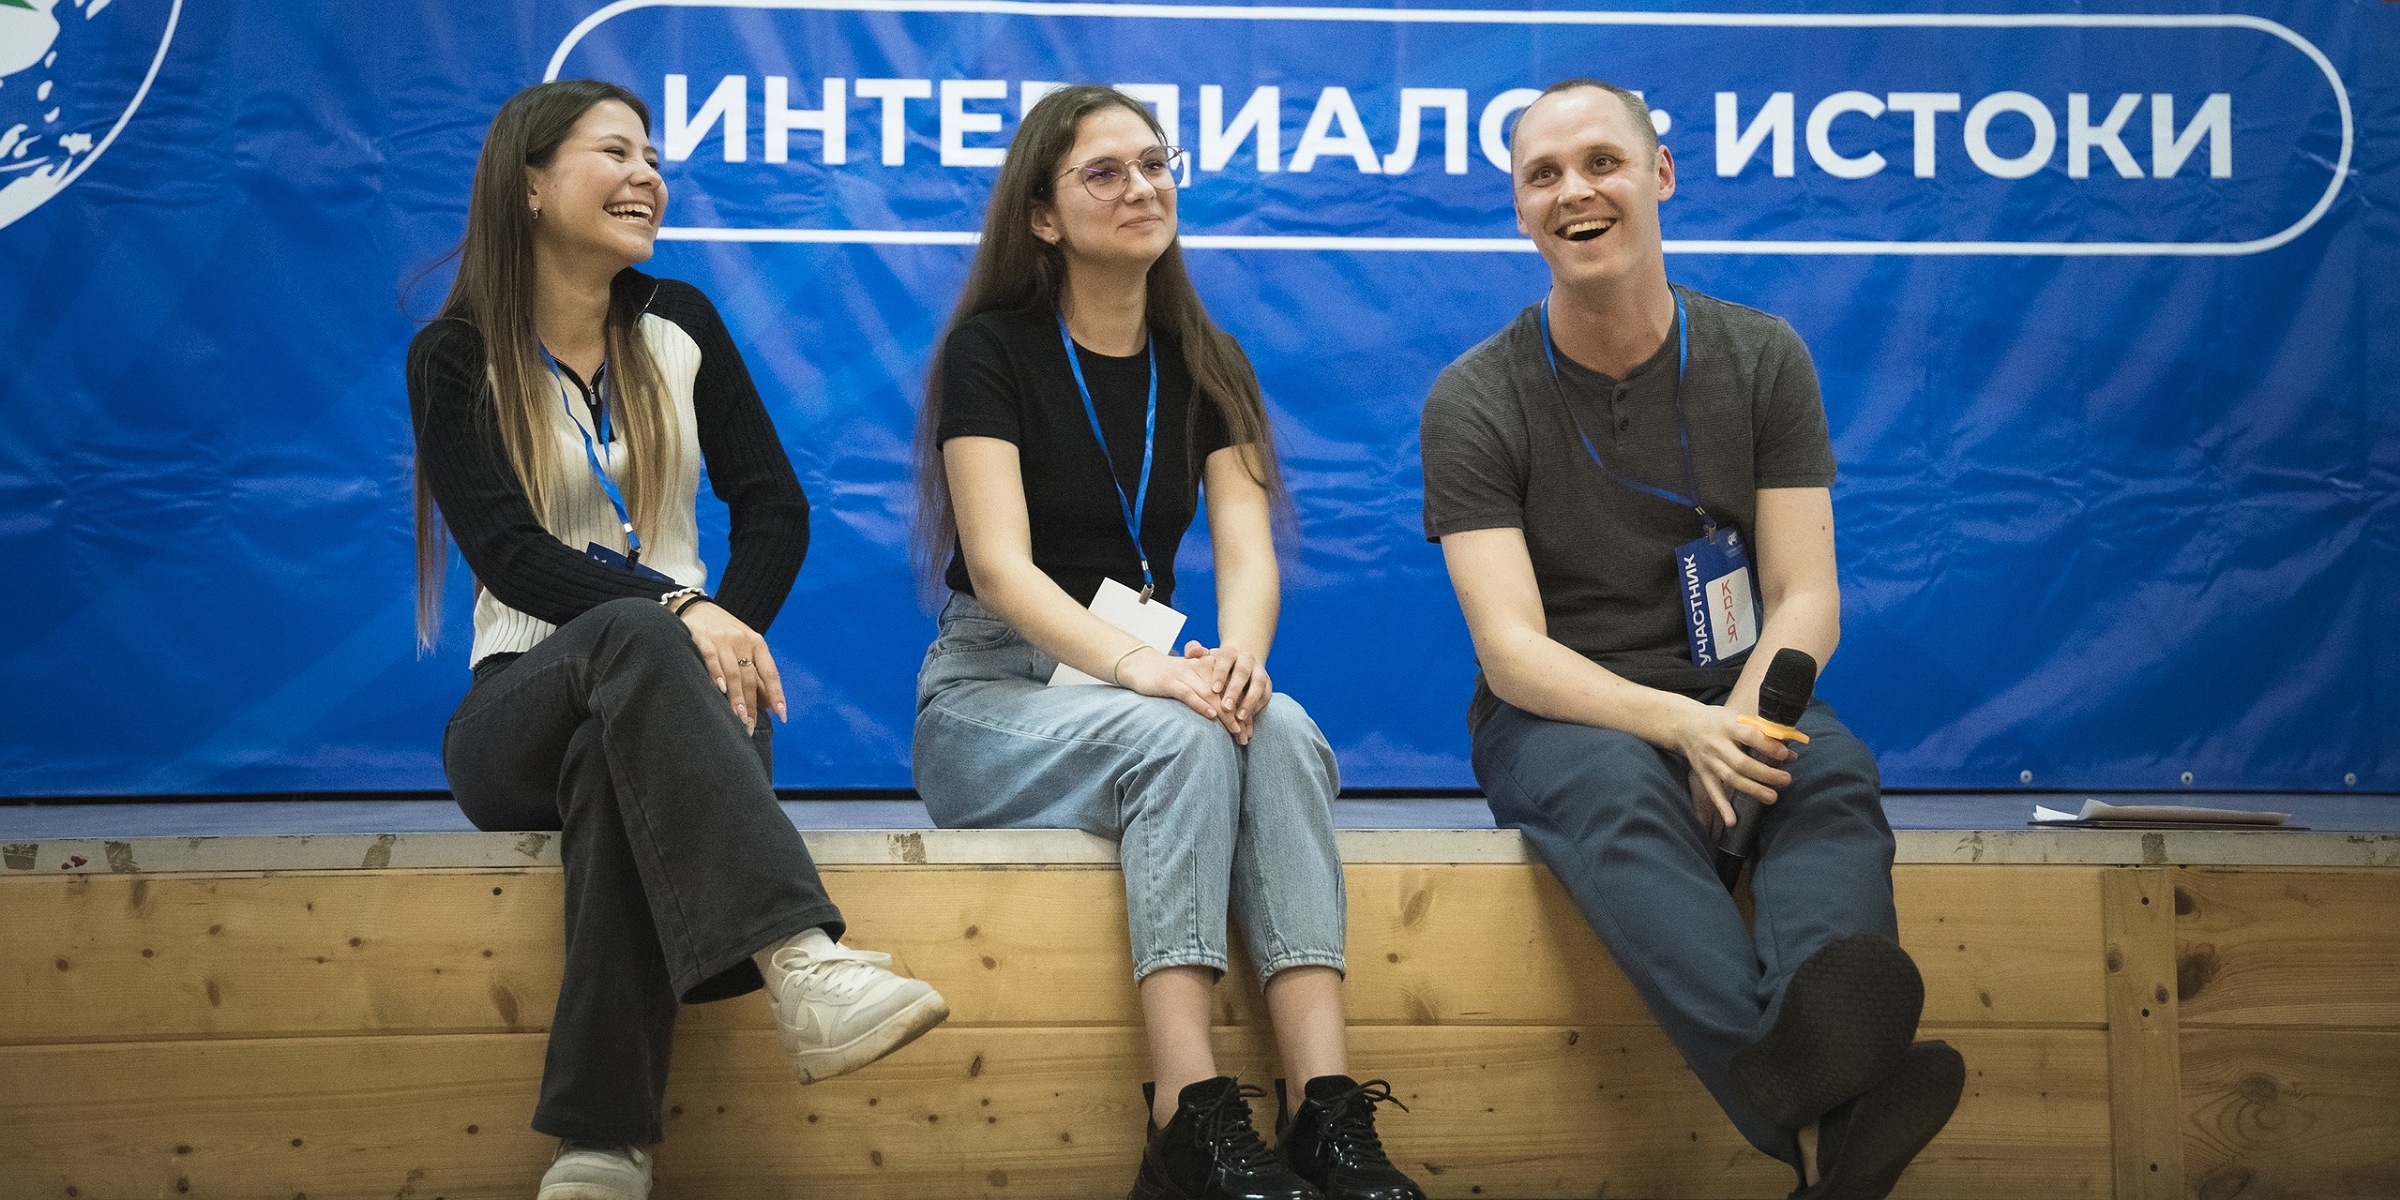 Студенты строительного факультета вошли в состав делегации от университета на Всероссийском конгрессе студенческой молодежи "Интердиалог: истоки"